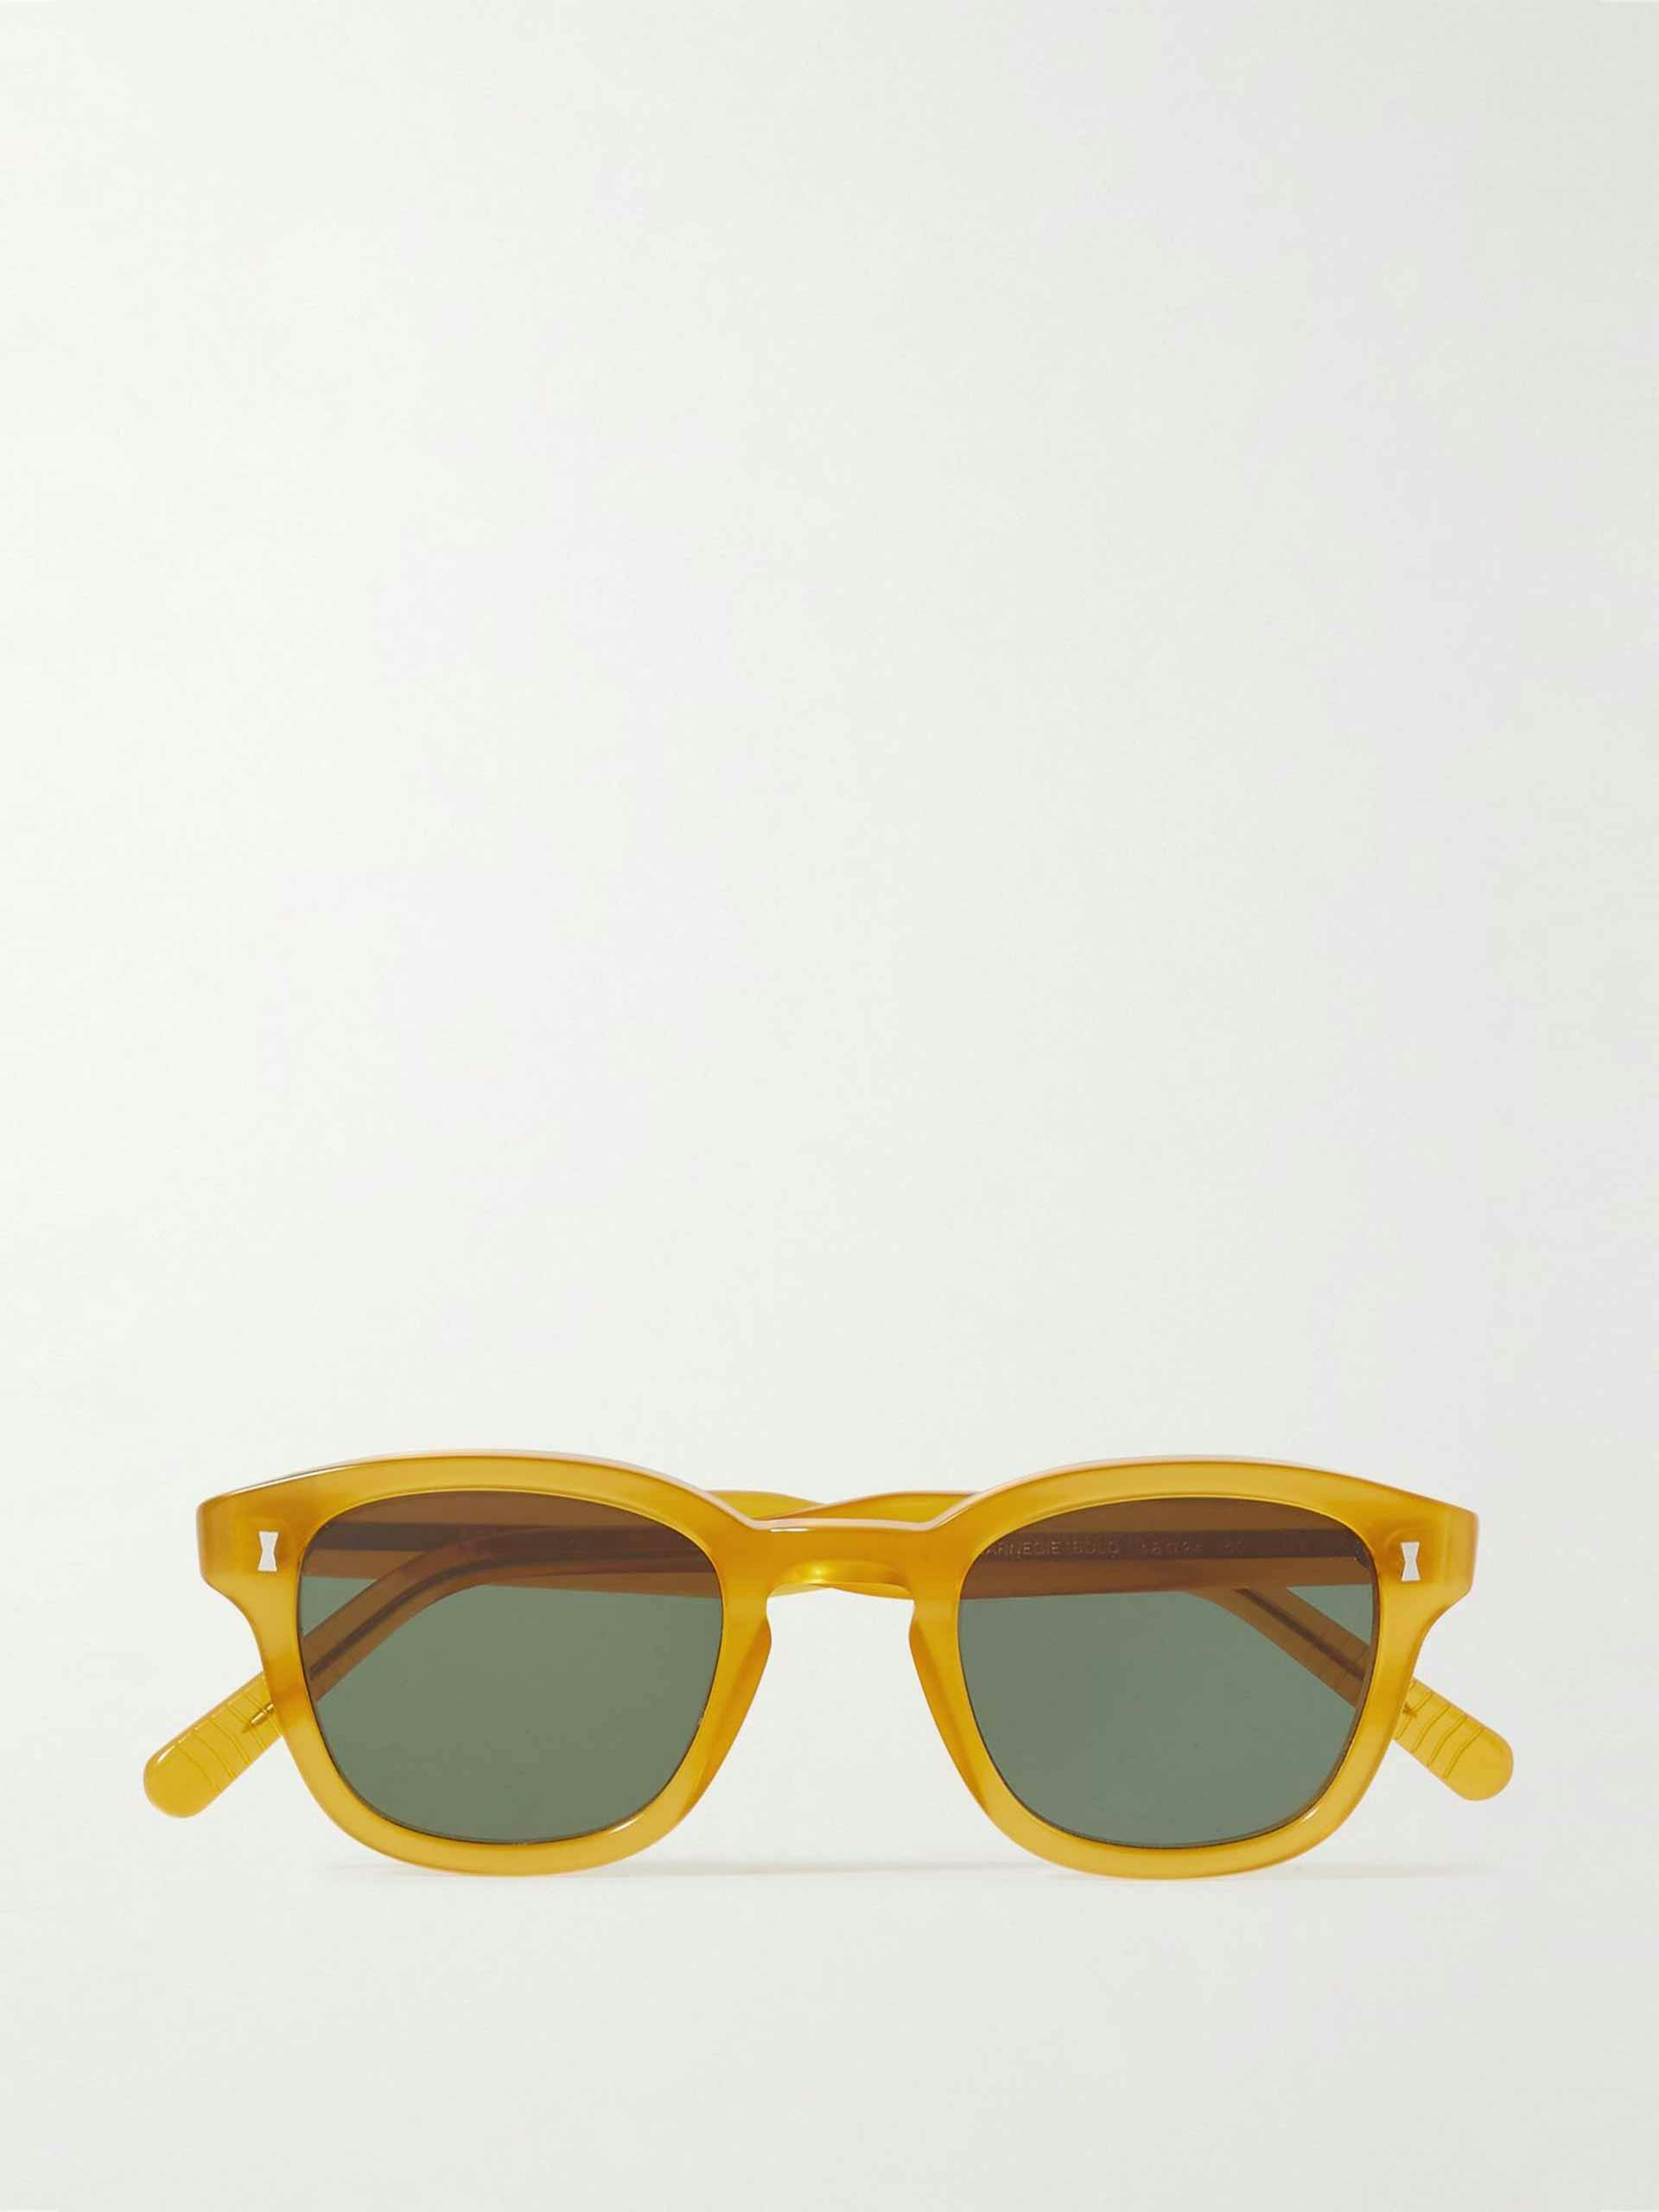 Yellow round frame sunglasses